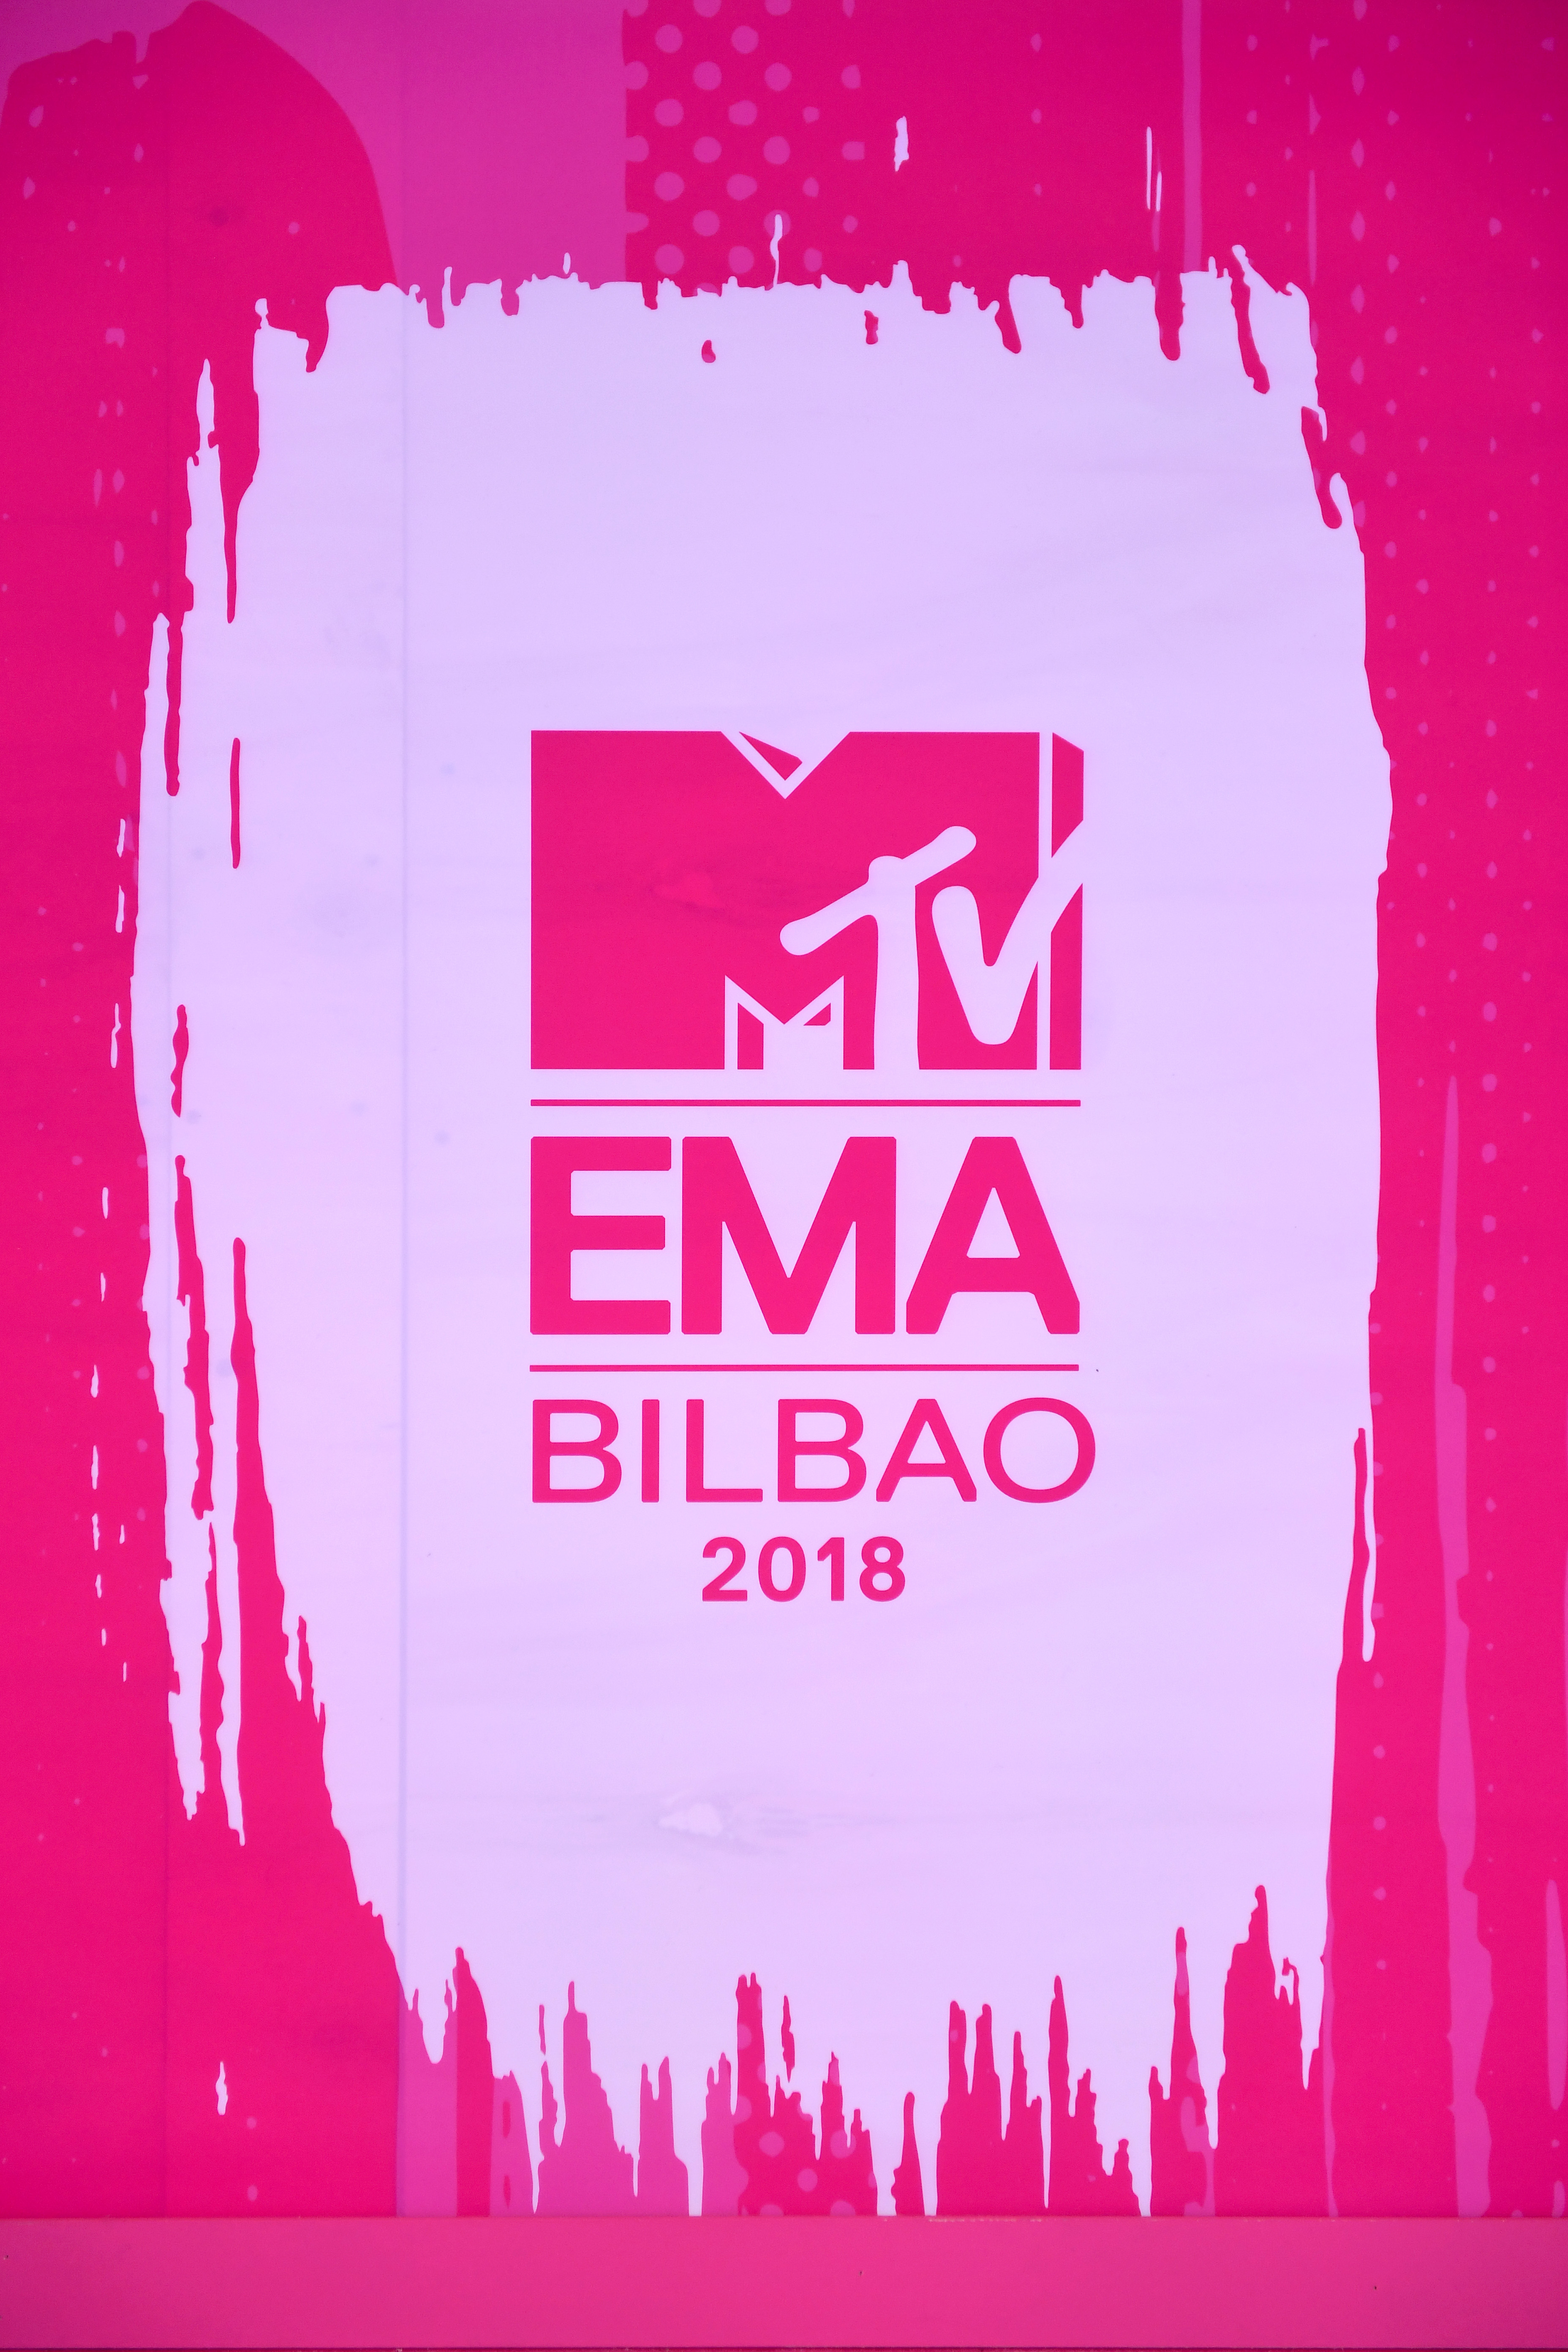 Mtv Ema Bilbao 2018 Conheça Os Vencedores Dos Mtv Europe Music Awards 2018